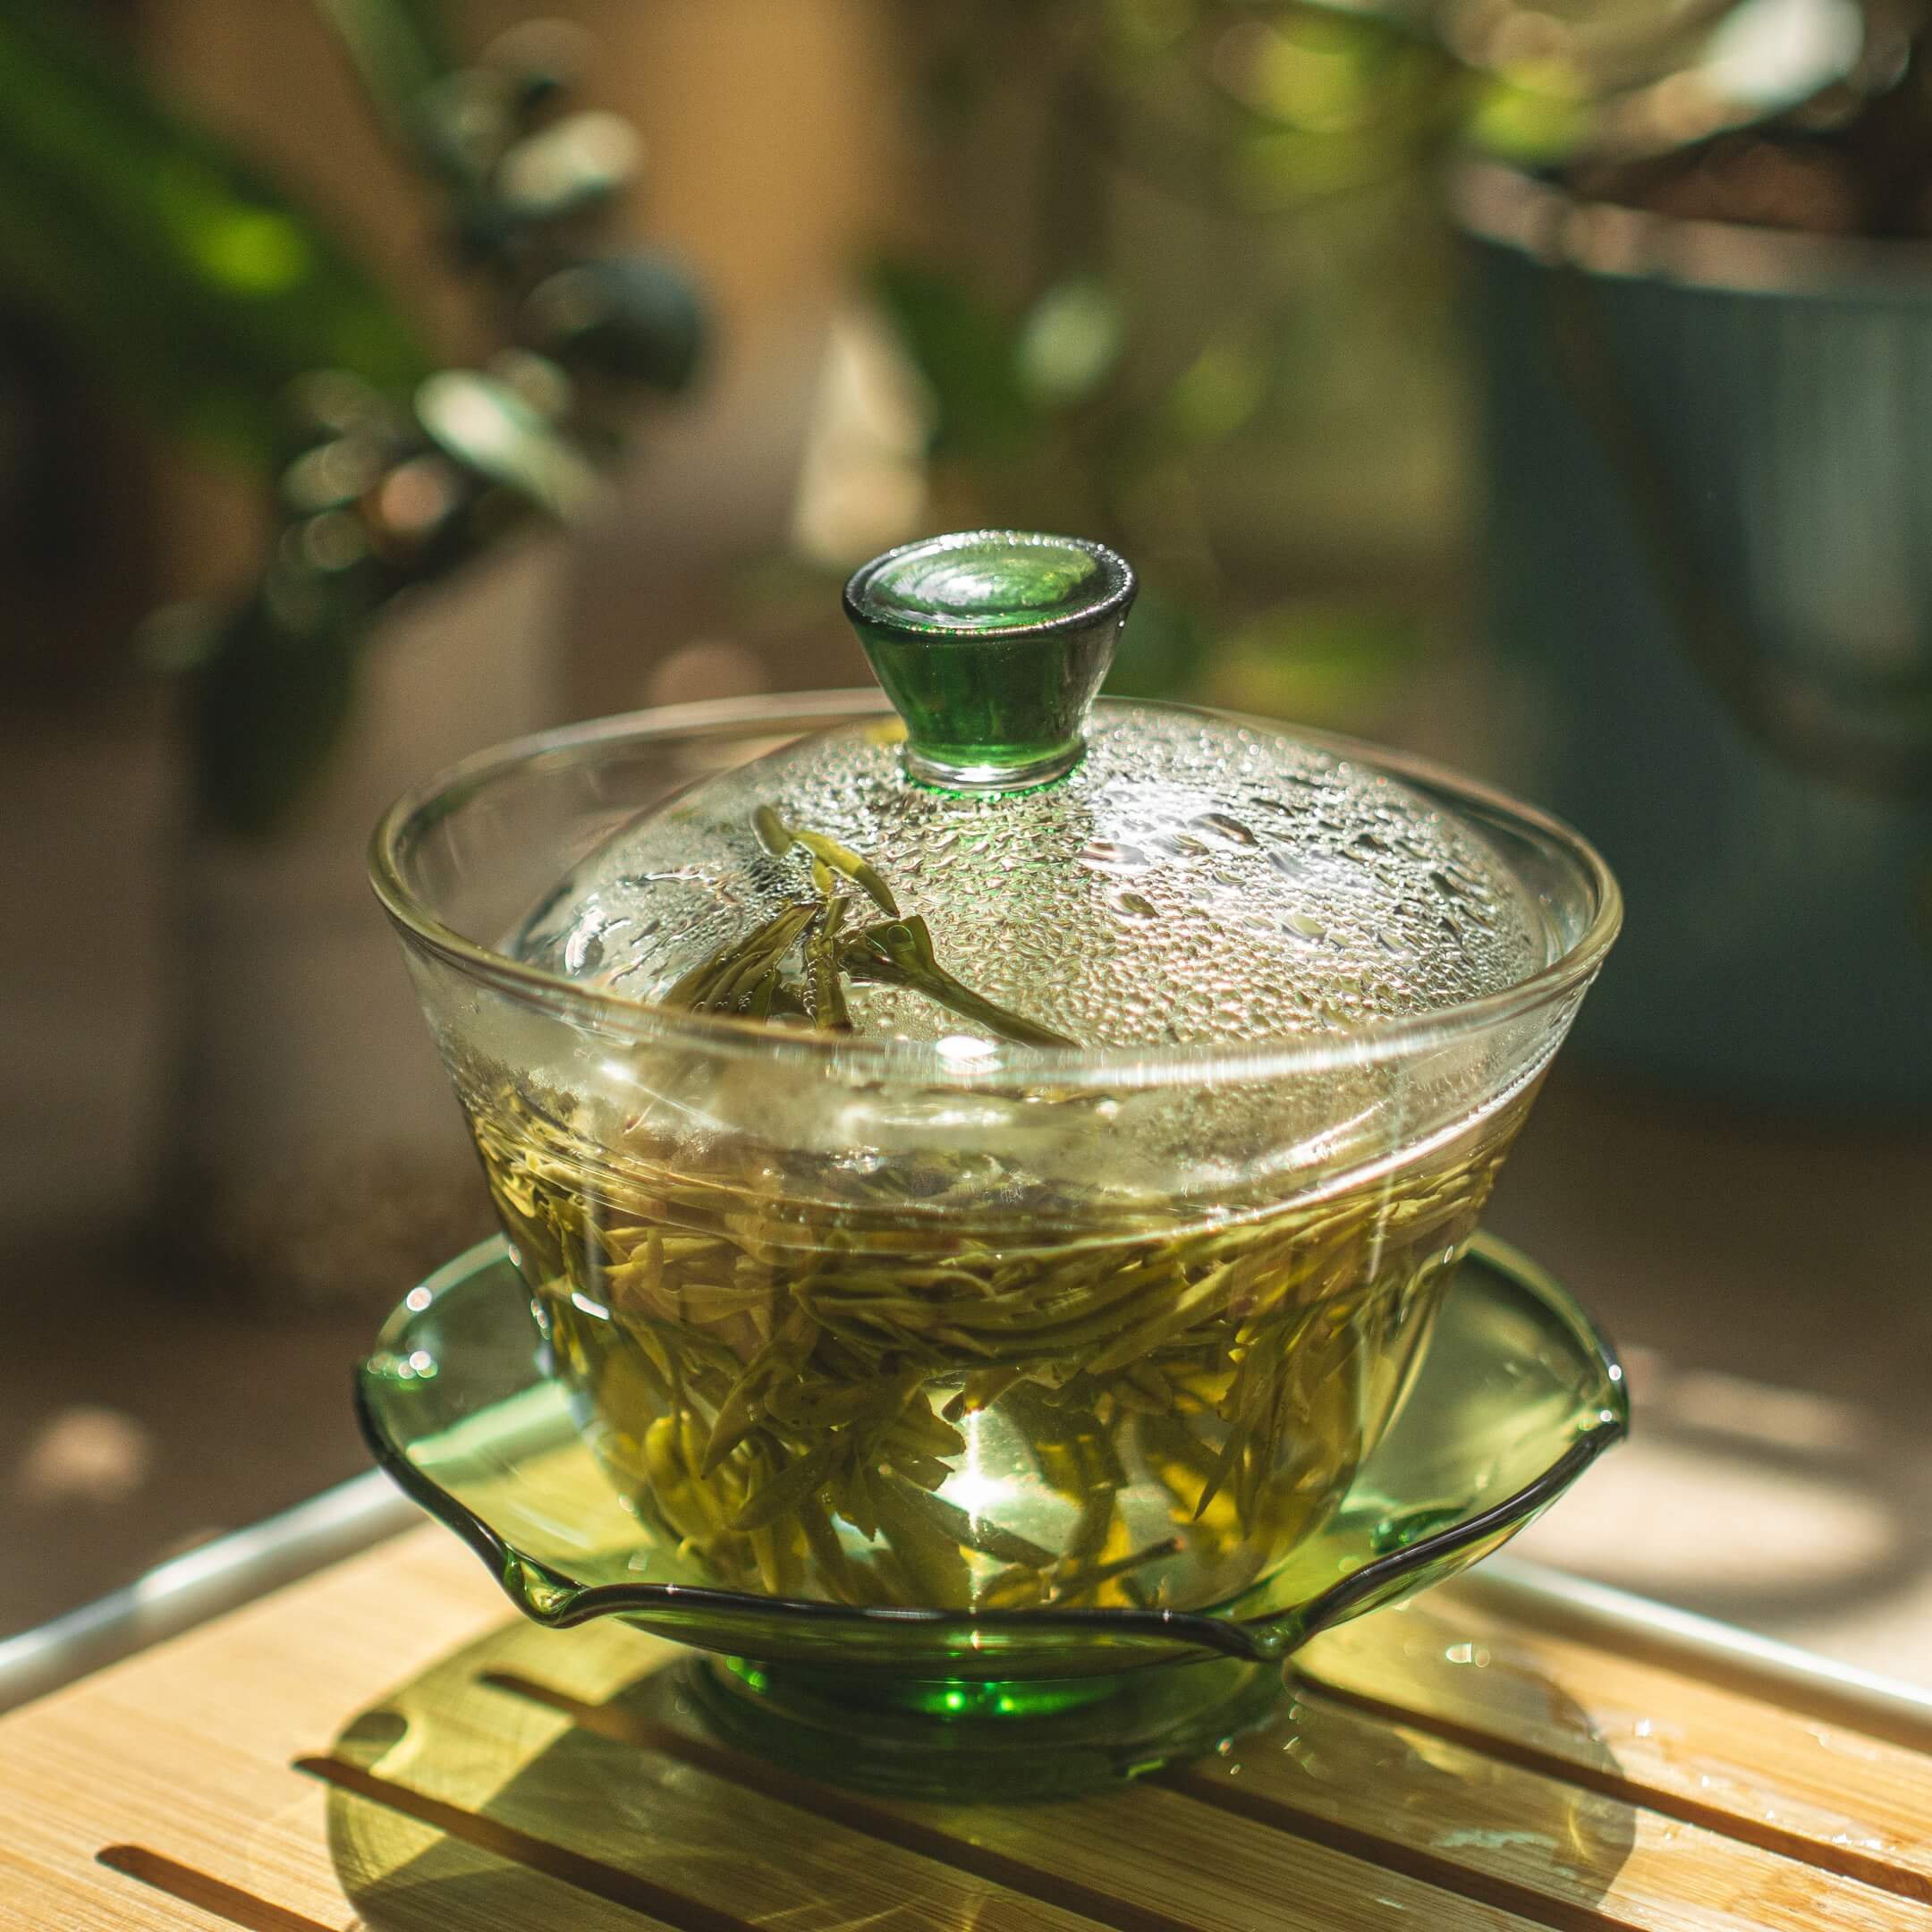 Правильная температура воды для заваривания зеленого чая